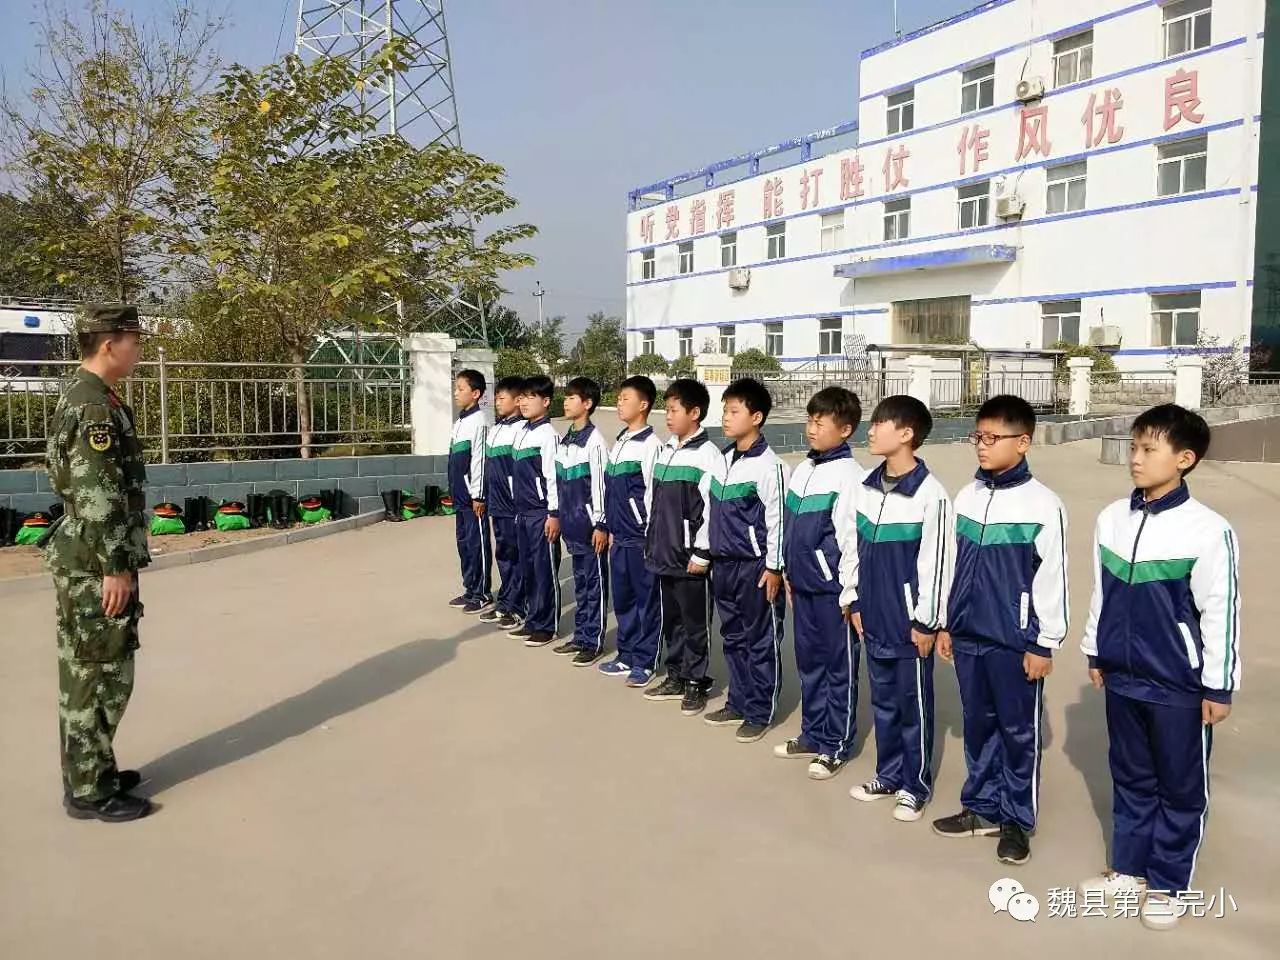 为加强对学生的爱国主义教育,10月28日,魏县第三完小学生走进县武警